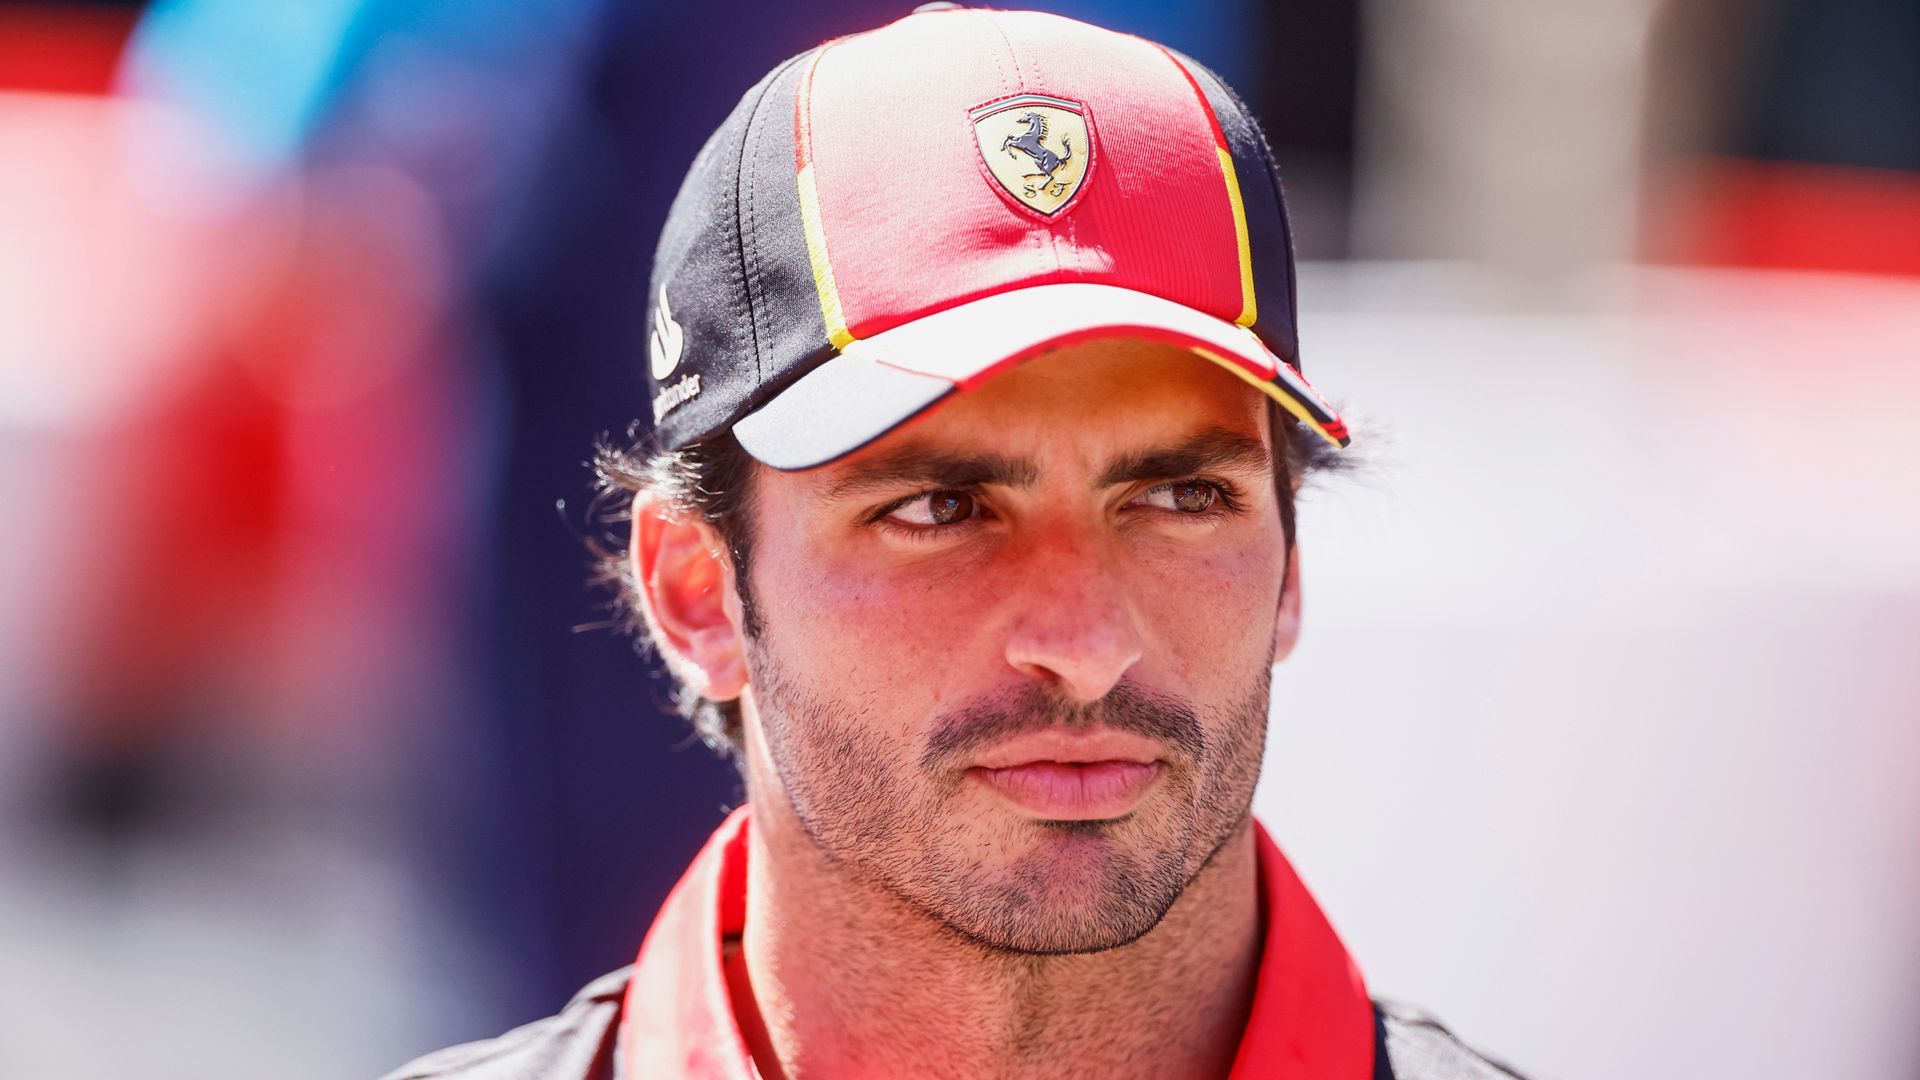 Sainz reprimanded, Ferrari fined, for Piastri near-miss